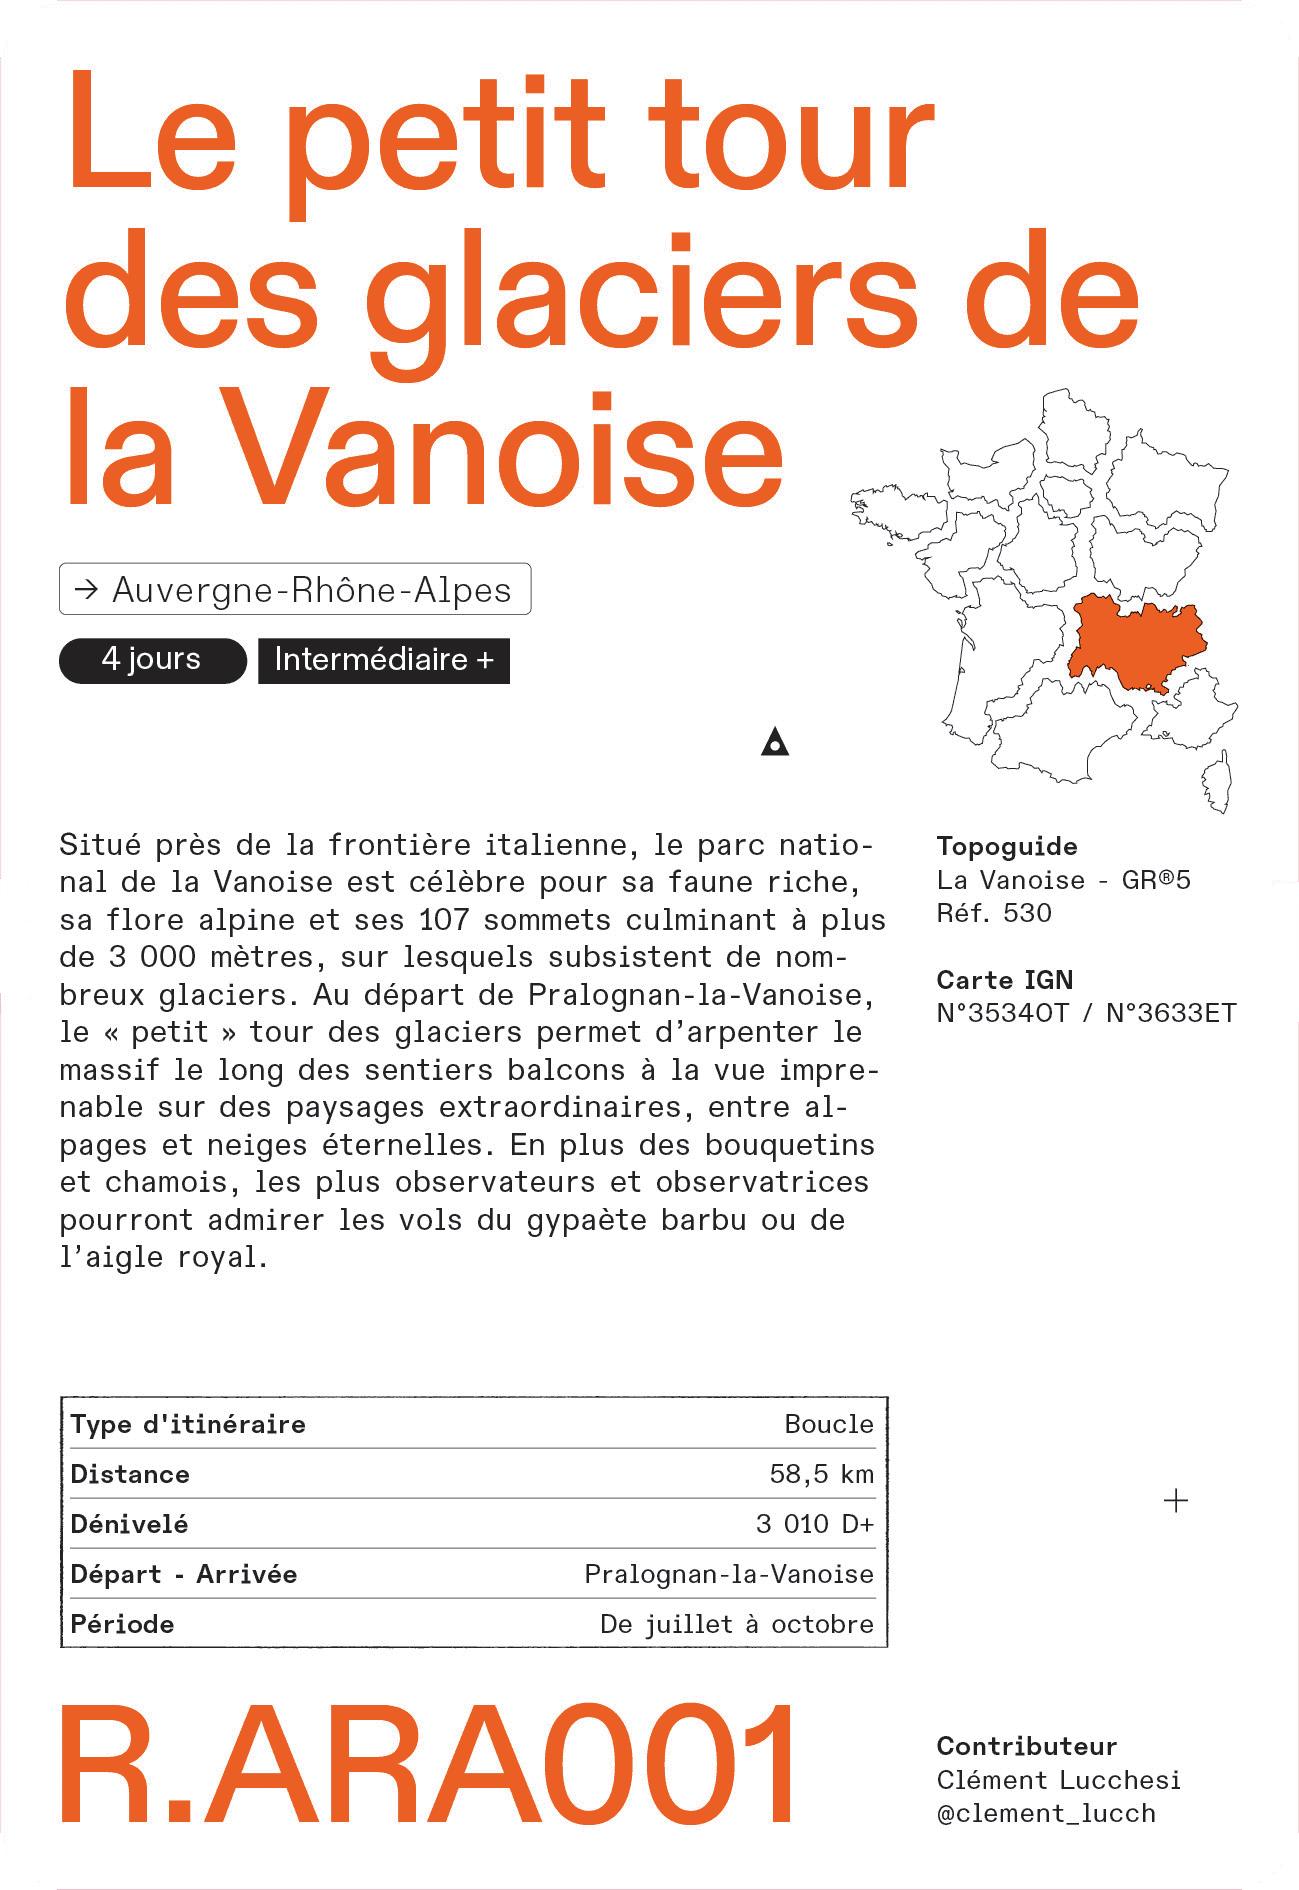 Recto Verso, la carte-méthode pour vos aventures en France